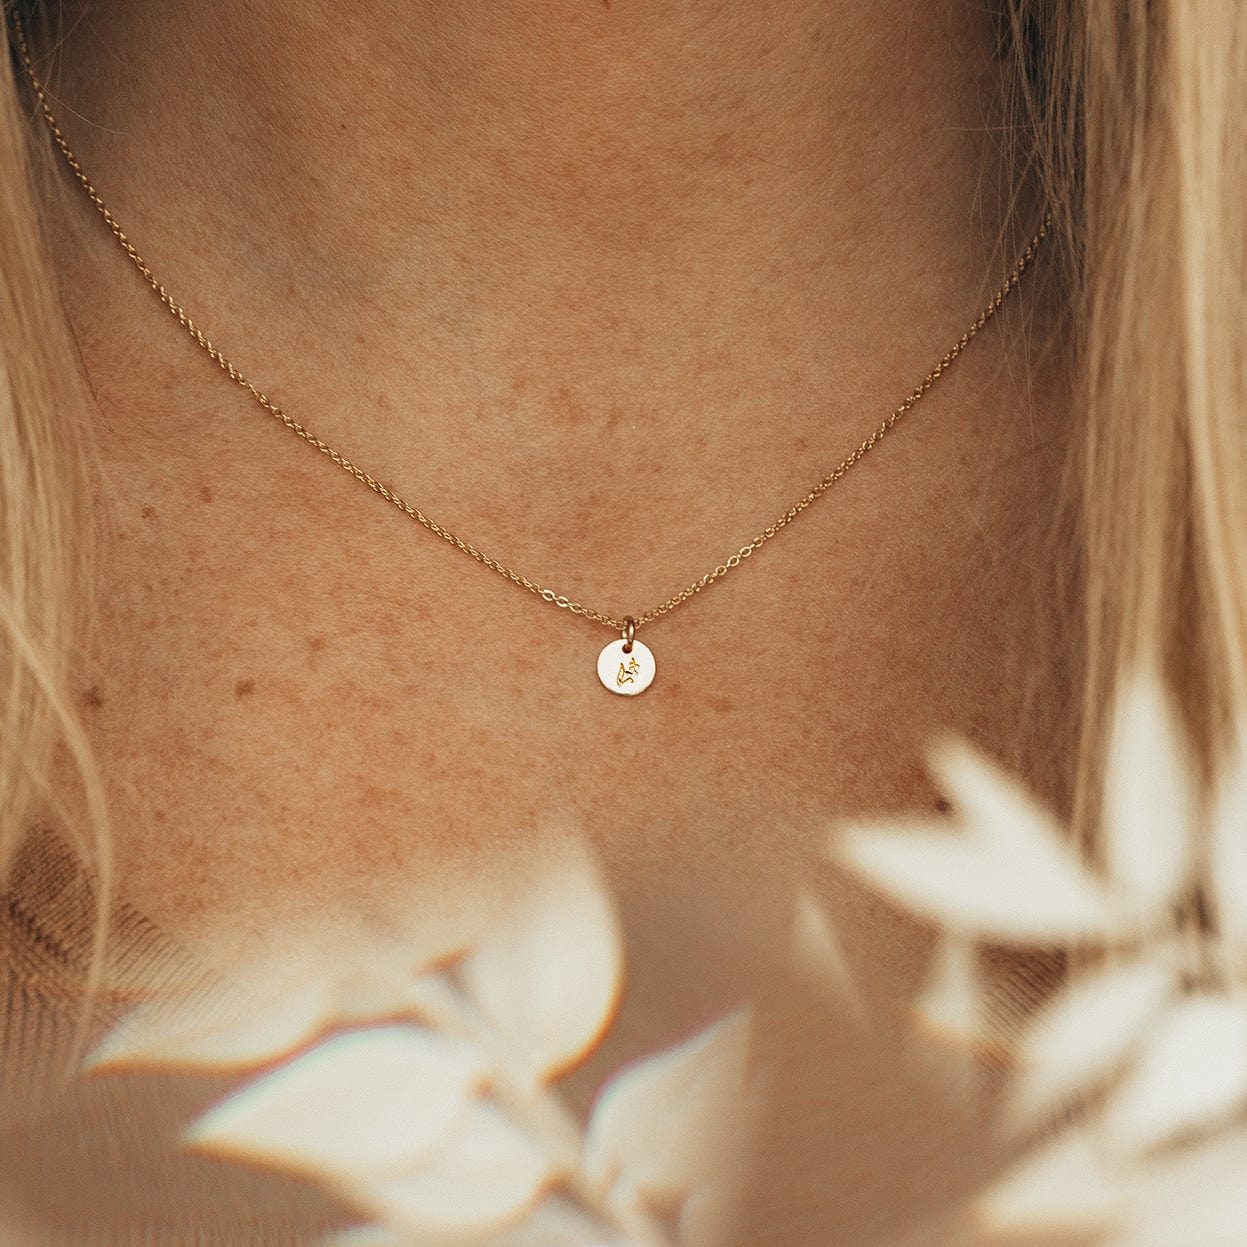 September Birth Flower Necklace | Gold, Rose Gold, Silver | Birth Flower Necklace Gold Filled / 1/2 / 20-22